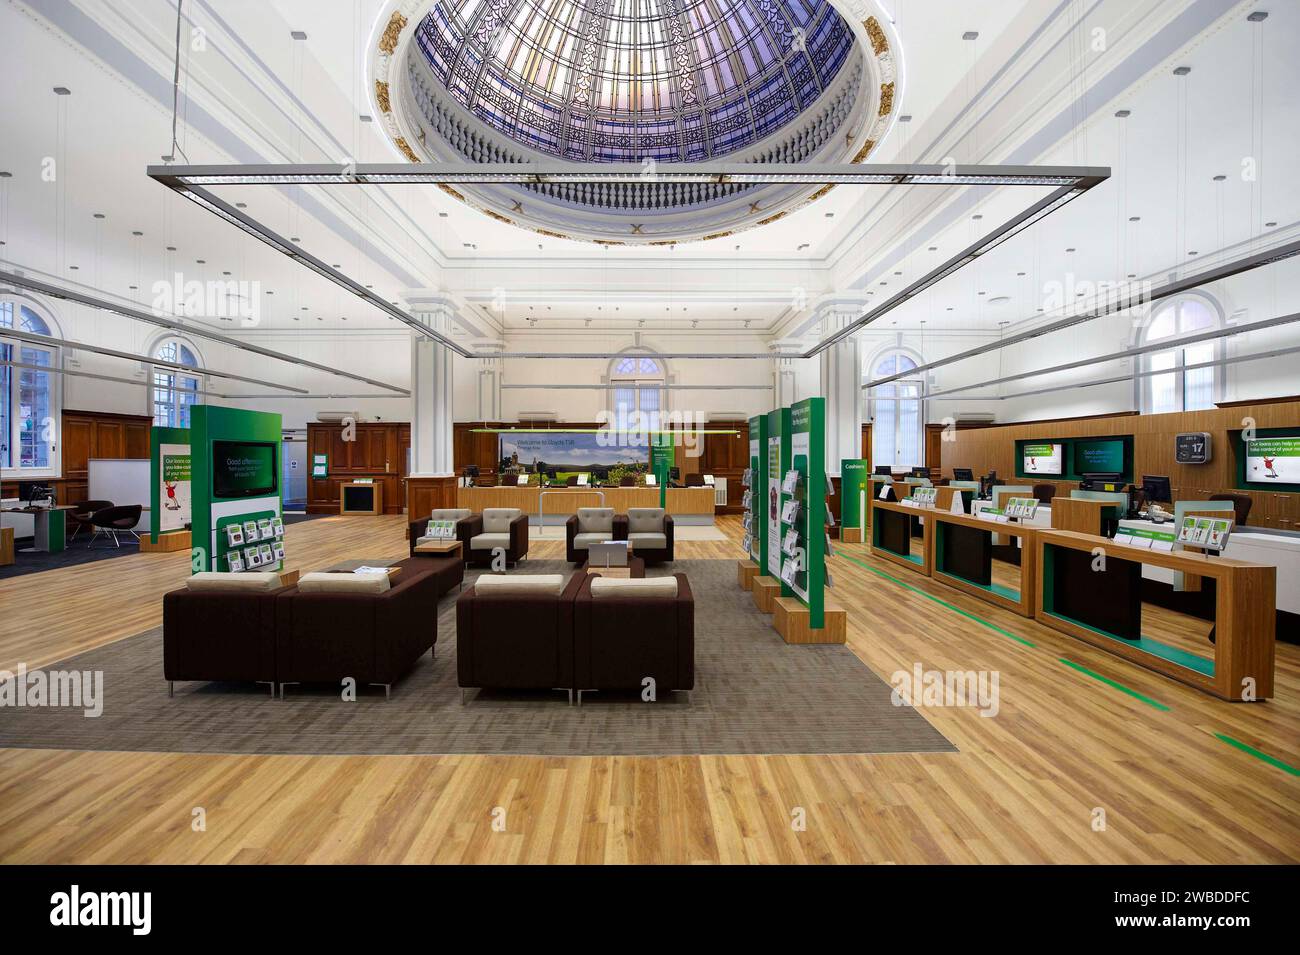 Das Innere einer Lloyds Bank mit einer großen Bankhalle in Northampton, Großbritannien Stockfoto